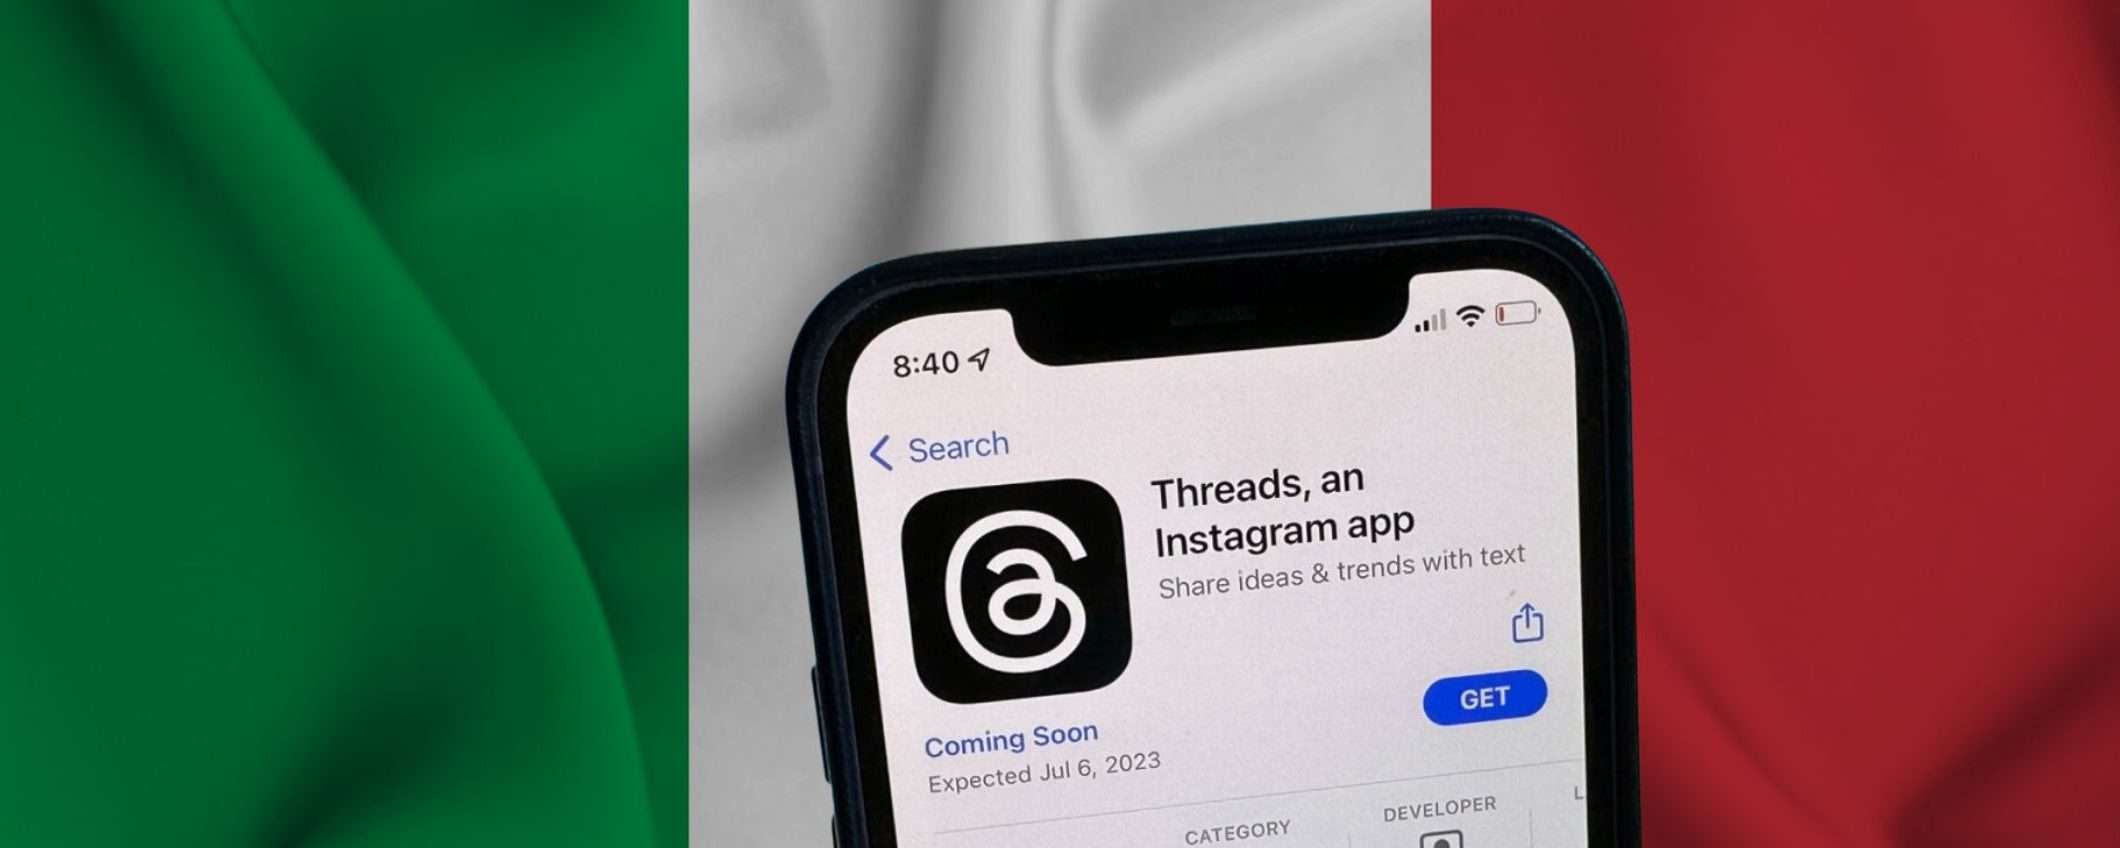 Come usare subito Threads dall'Italia su Android e iOS